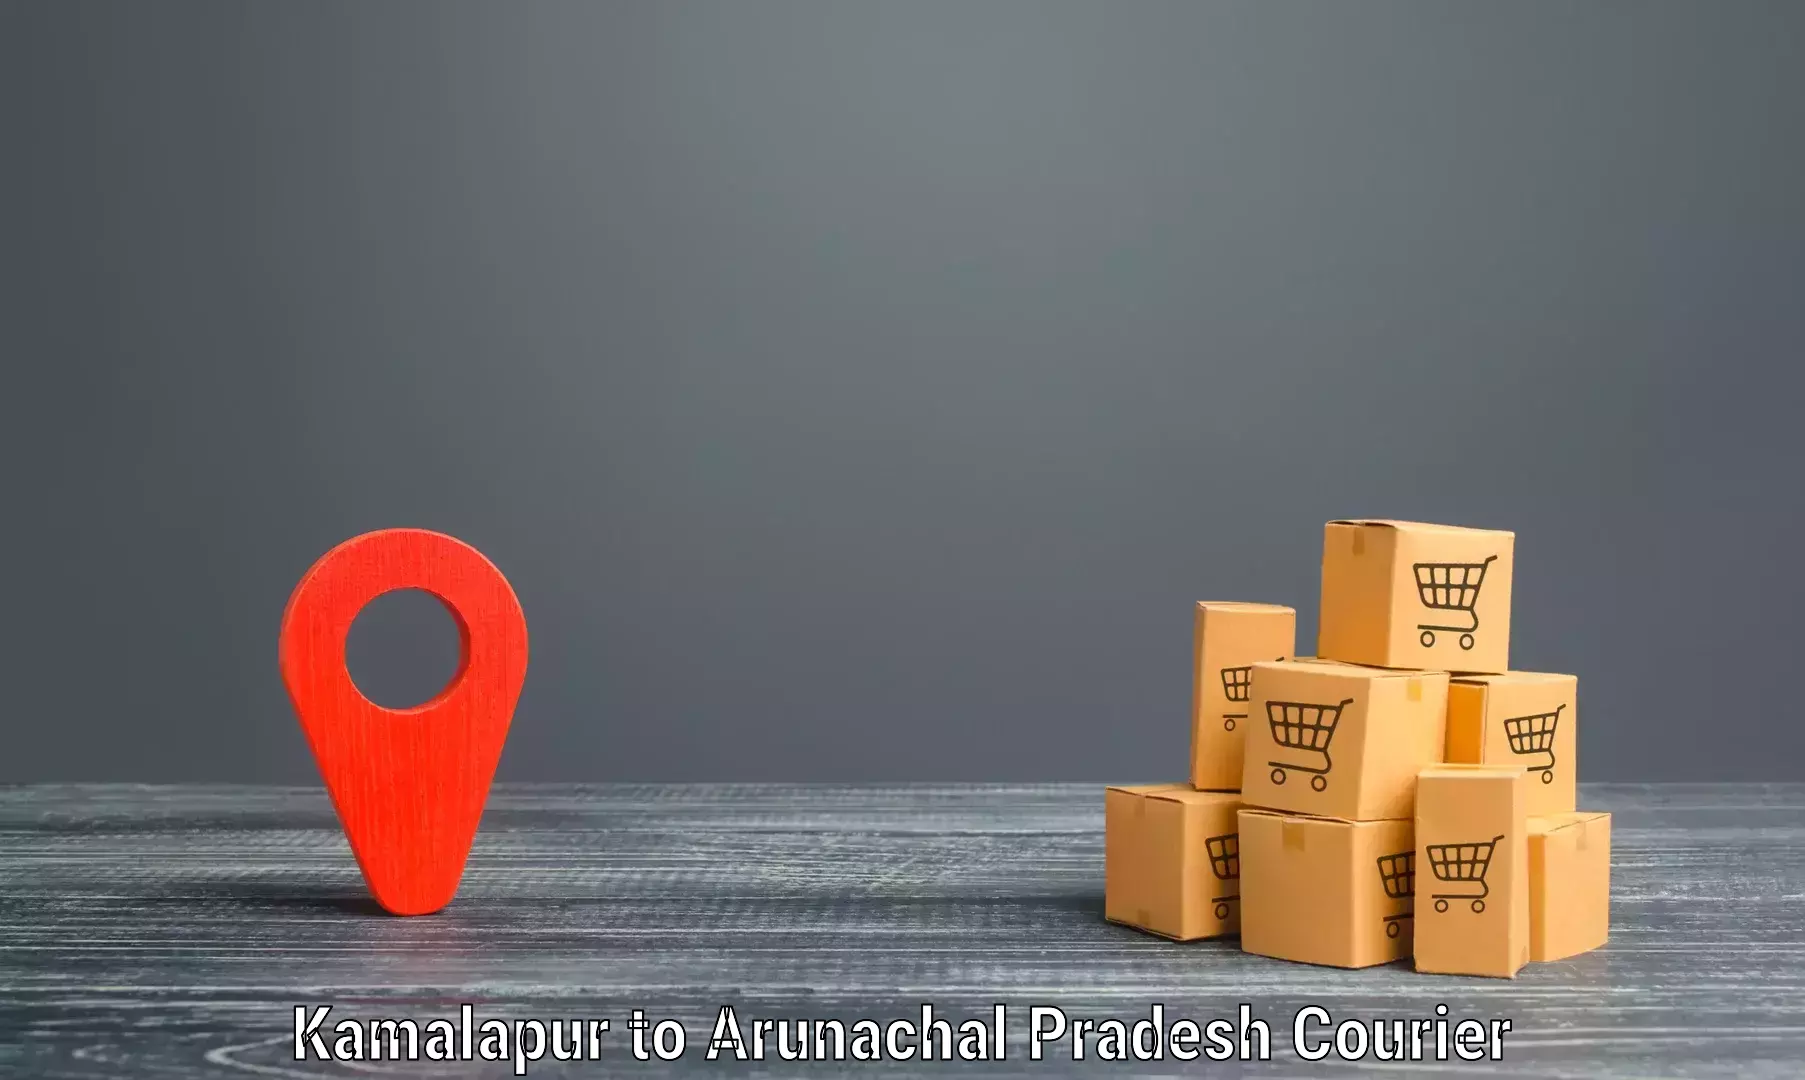 Versatile courier offerings Kamalapur to Lower Subansiri